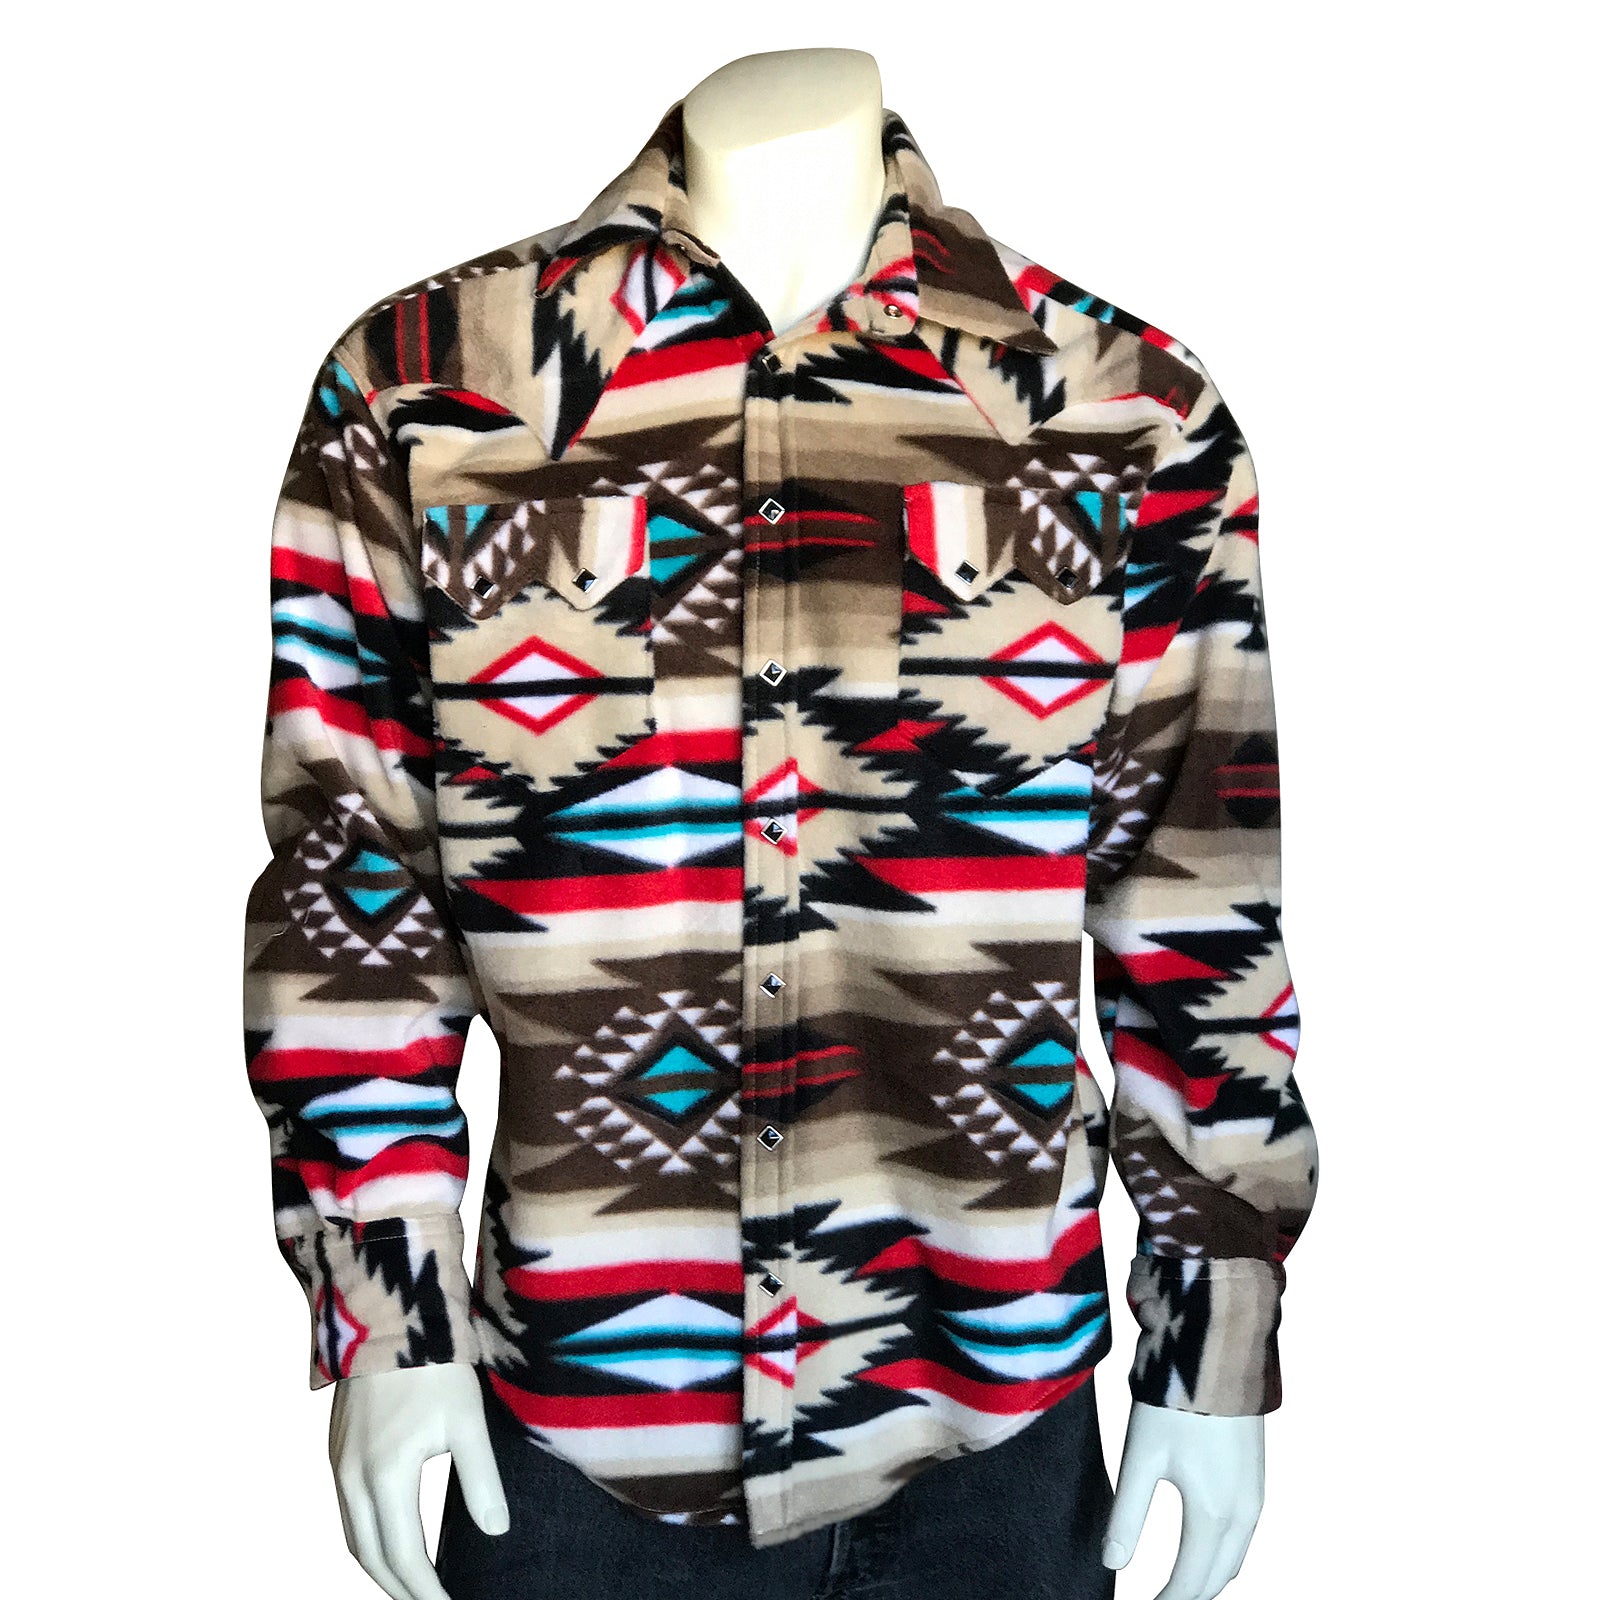 Men's Native Pattern Fleece Western Shirt in Brown & Tan